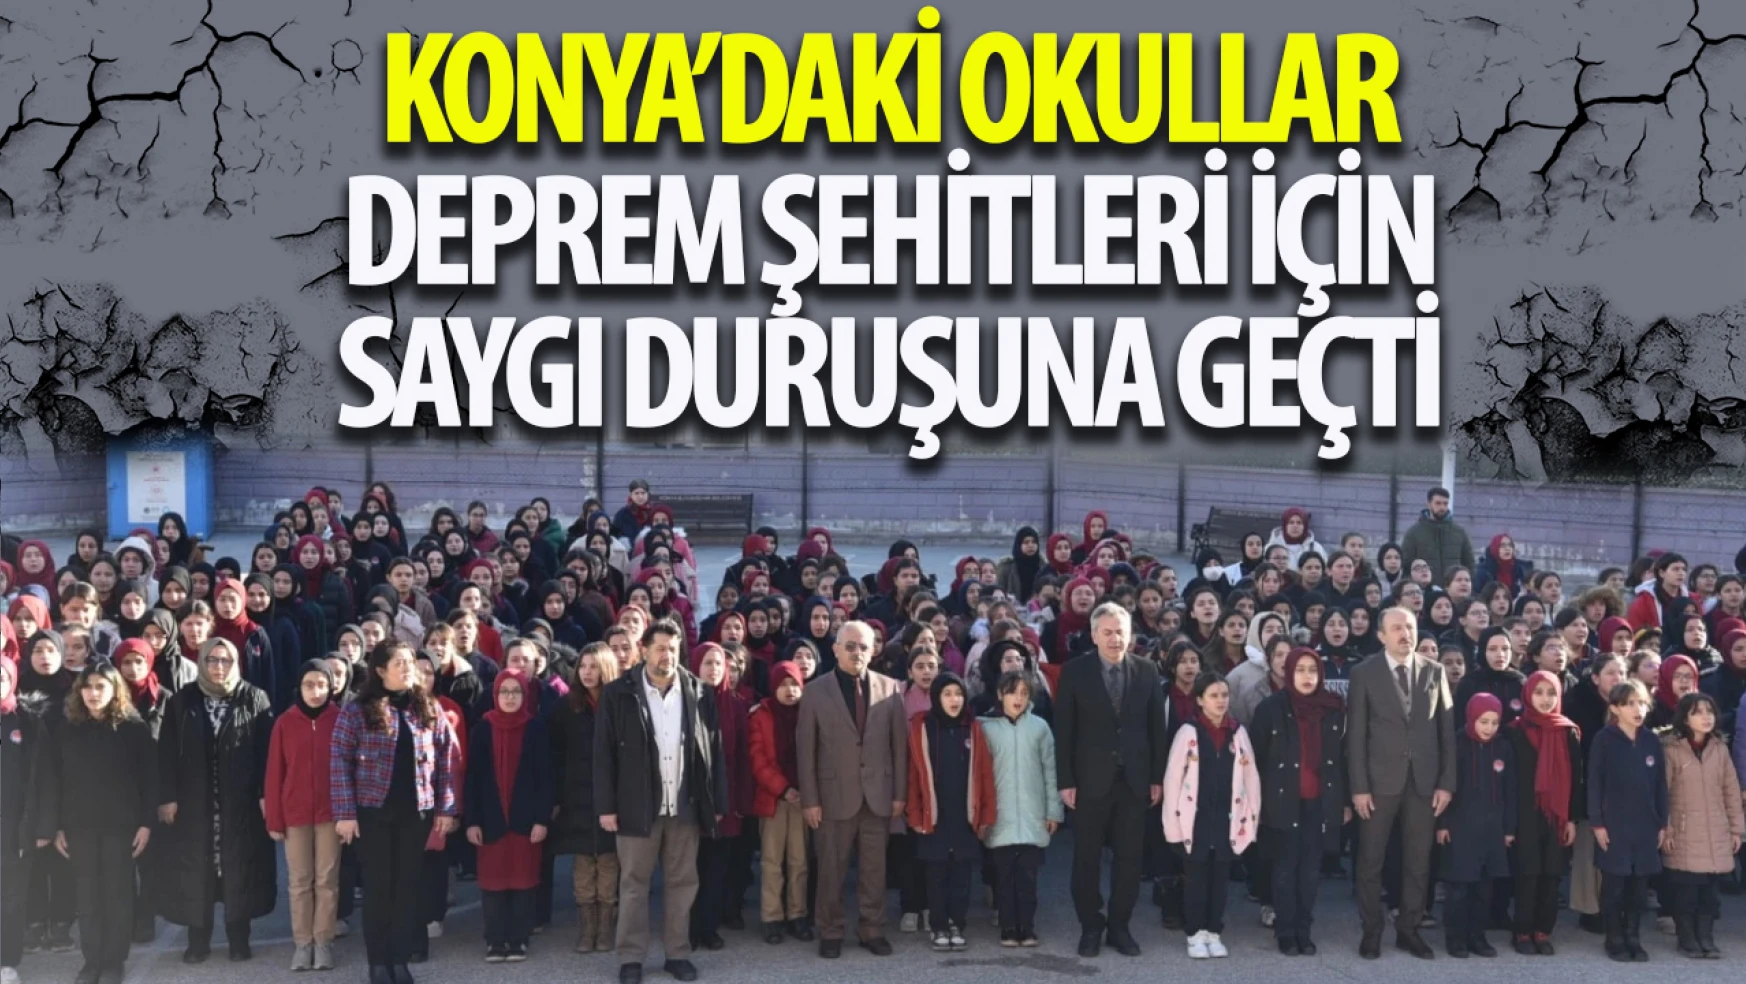 Konya'da okullarda 6 Şubat depremlerinde hayatını kaybeden vatandaşlarımız için saygı duruşu gerçekleştirildi